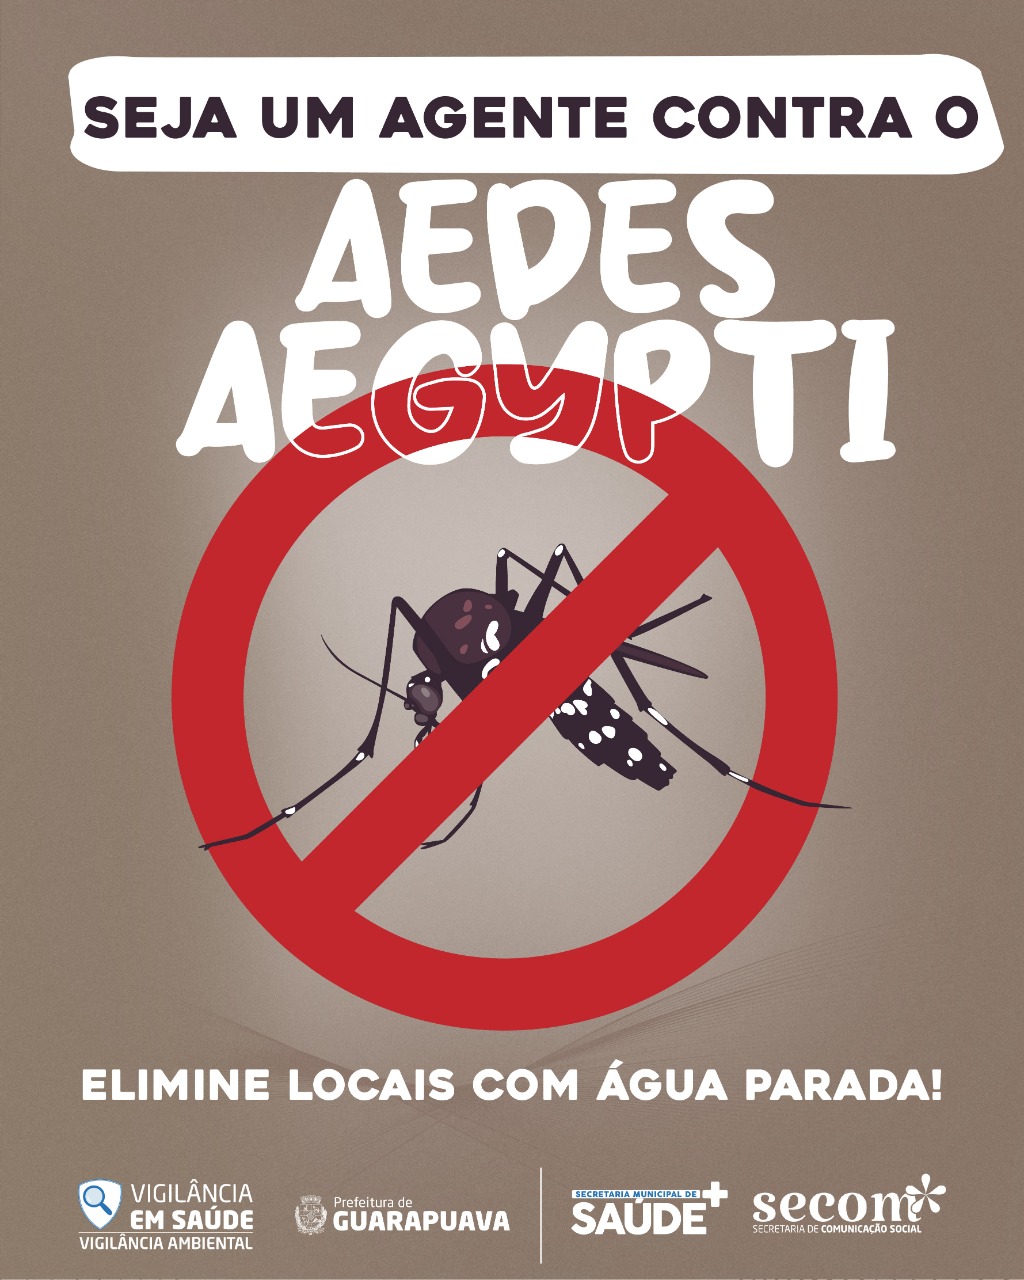 Es wird eine Erhebung zum Befall von Aedes aegypti in Guarapuava durchgeführt